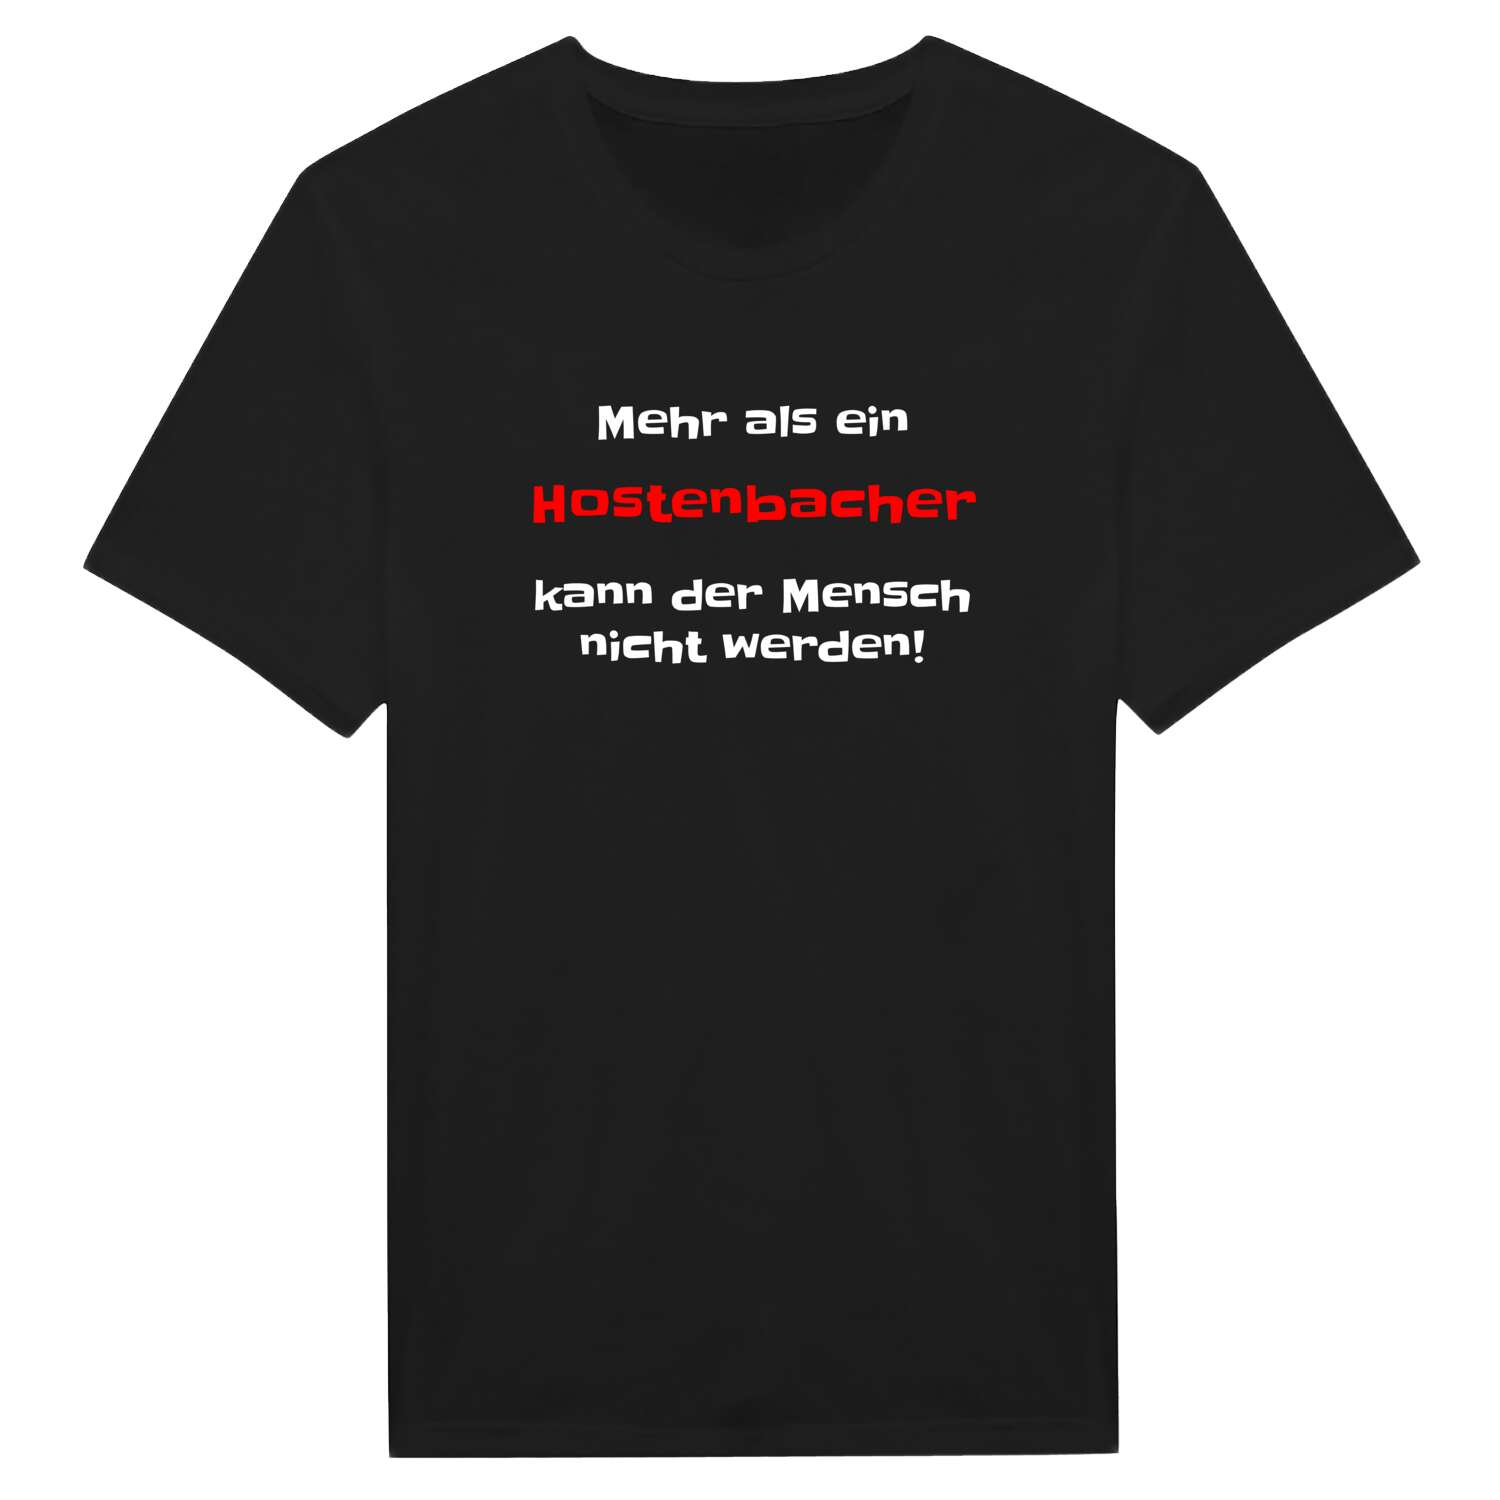 Hostenbach T-Shirt »Mehr als ein«